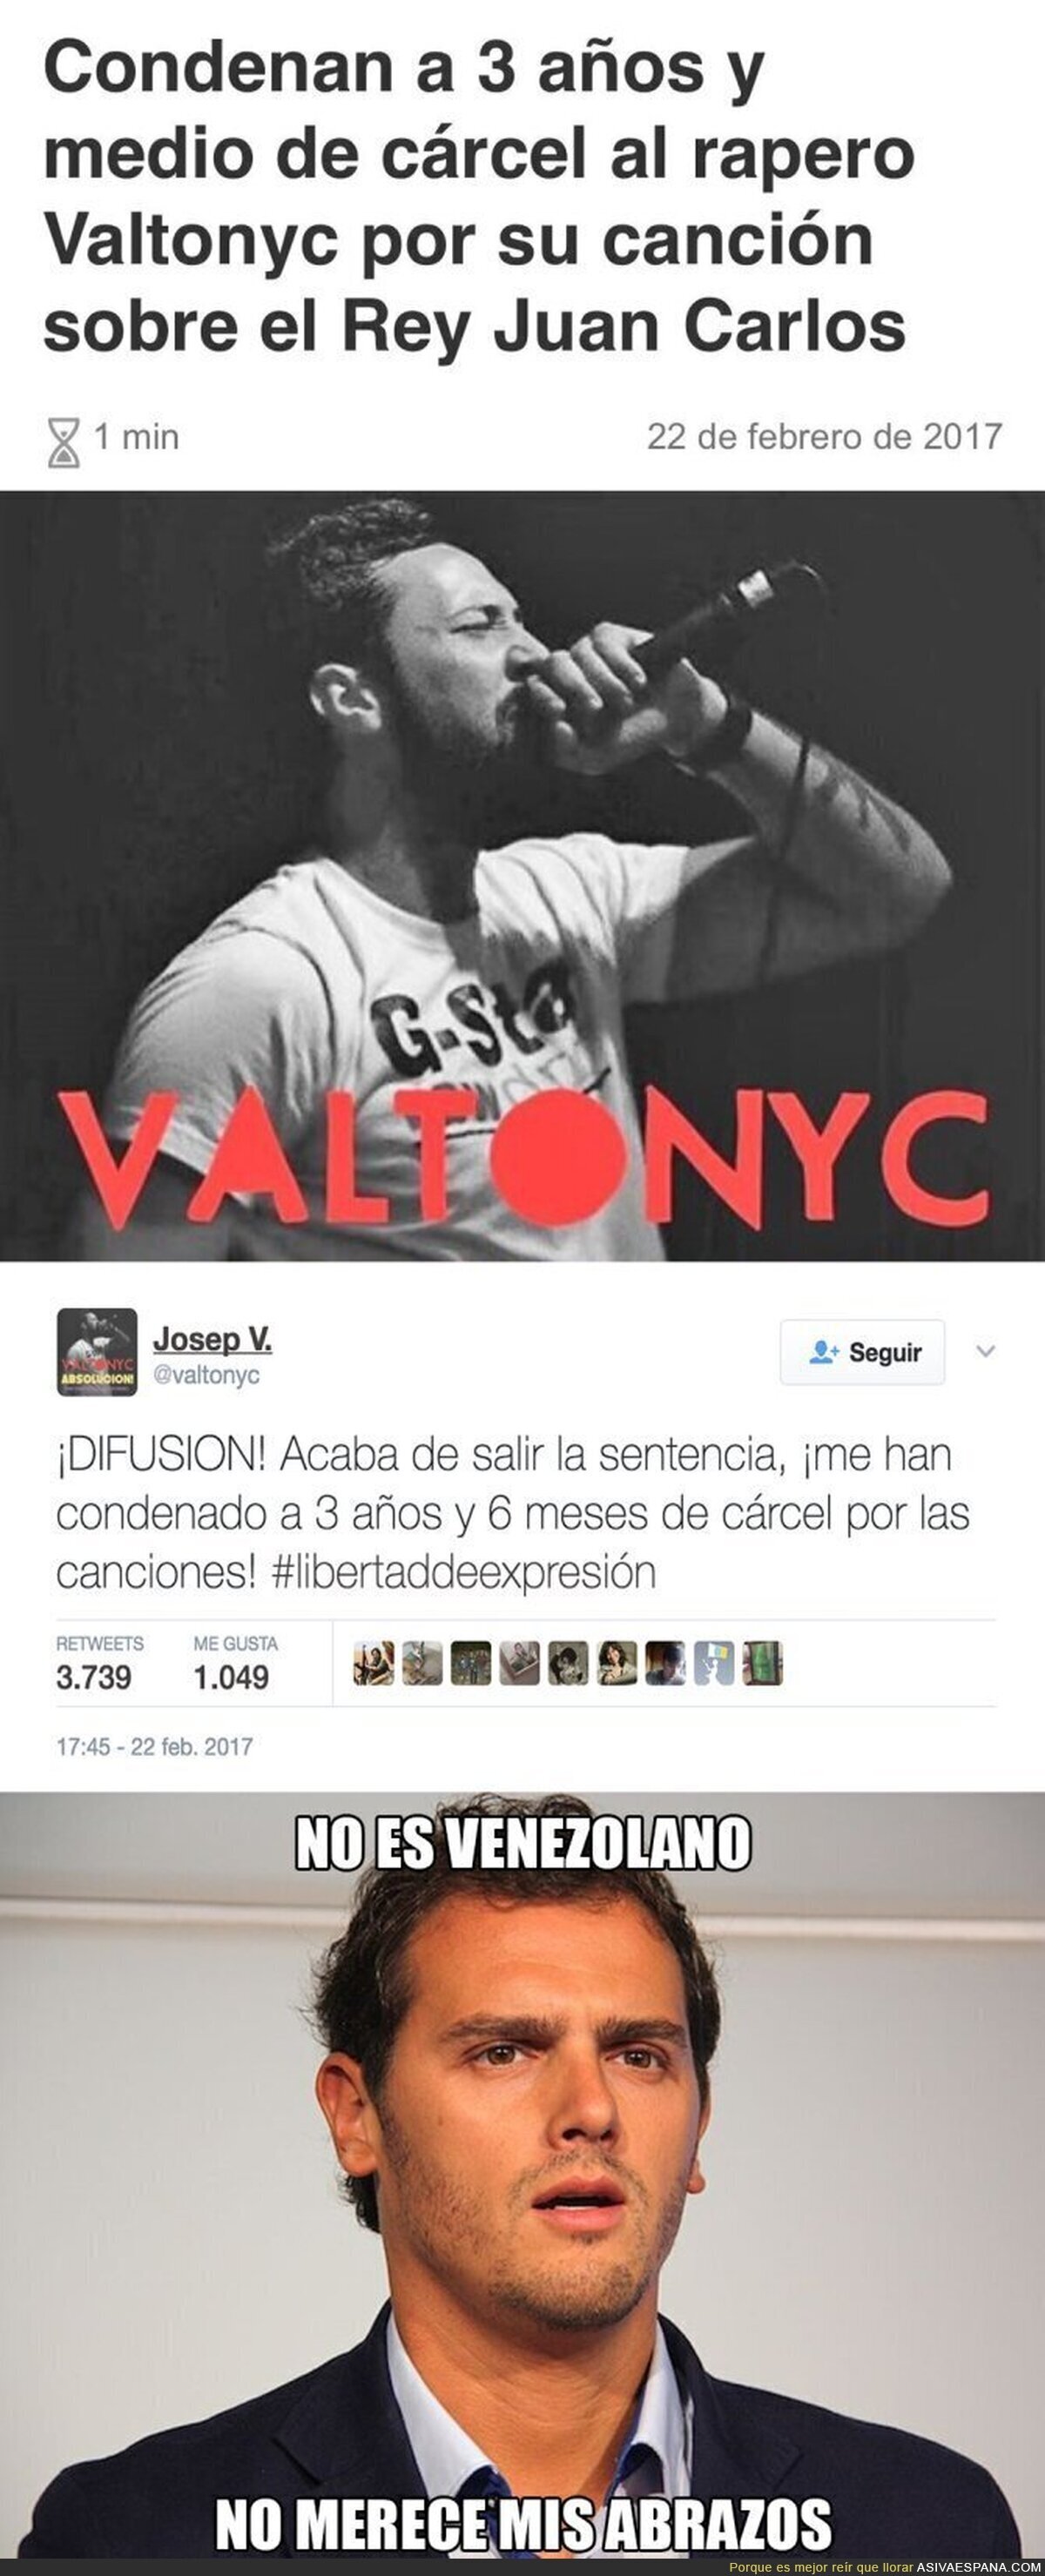 Valtonyc ha sido condenado a 3 años y 6 meses de cárcel por una canción sobre el Rey